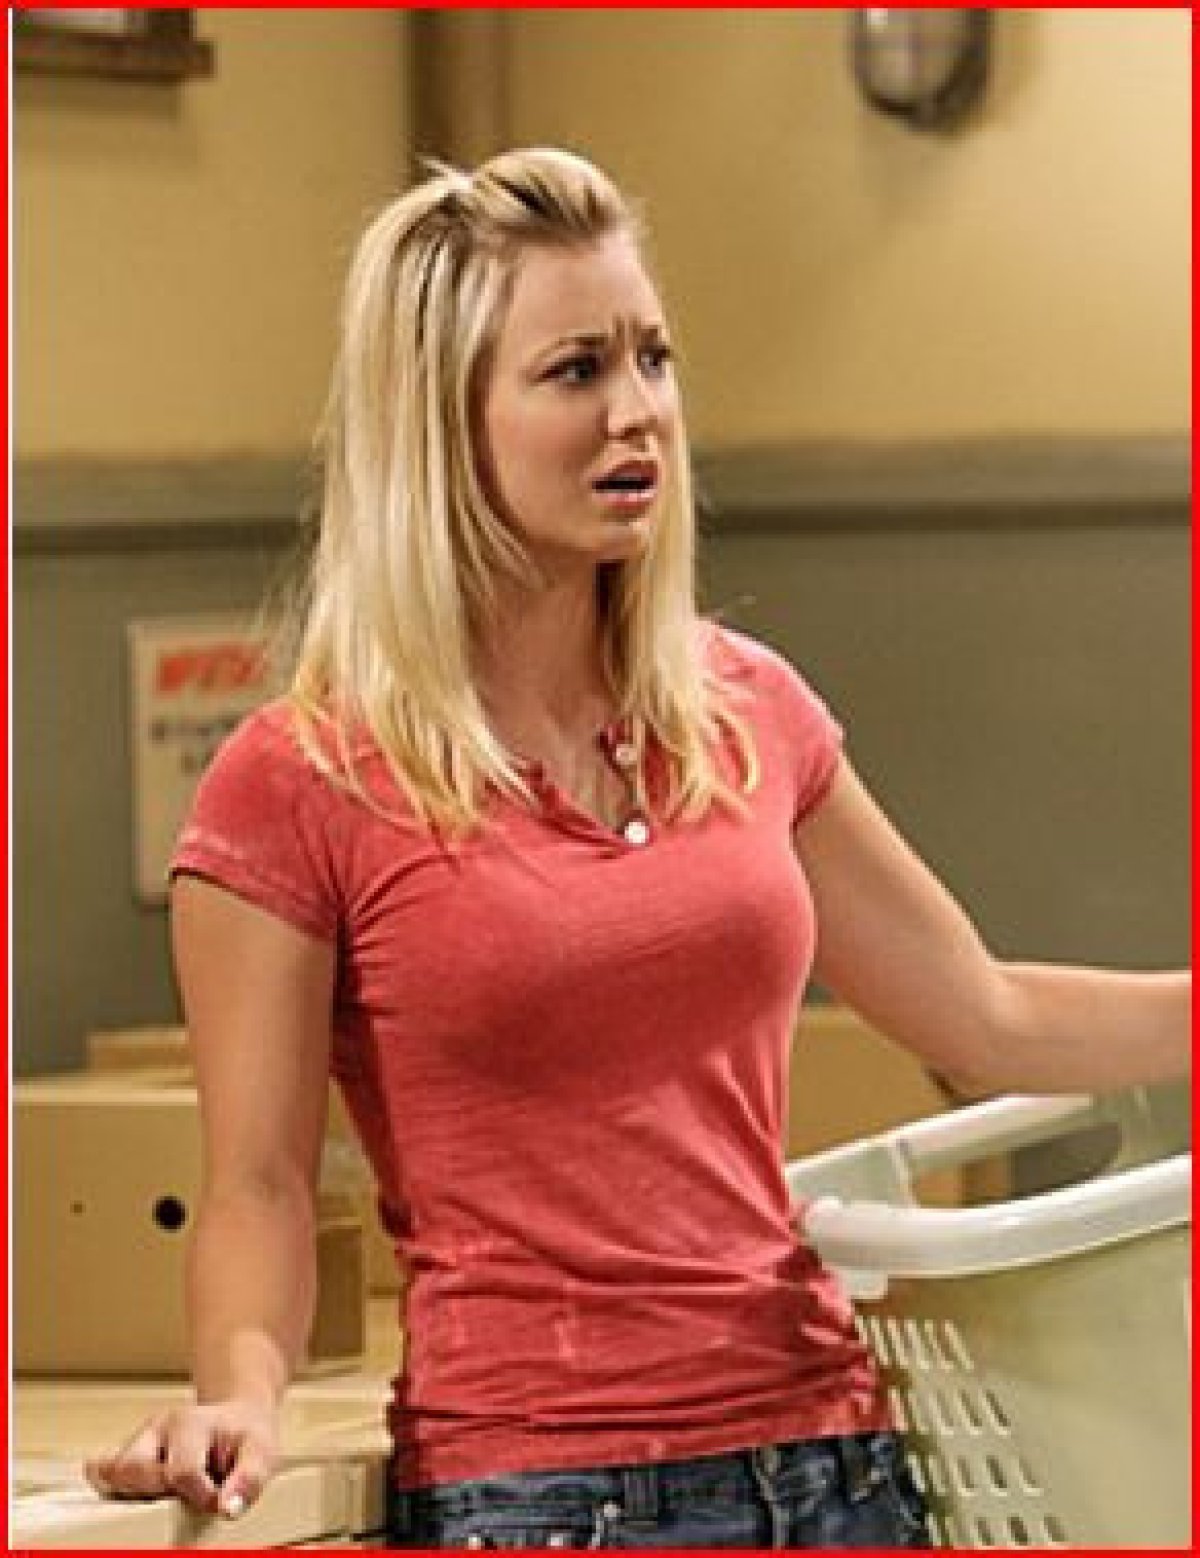 "Penny" La chica sexy de Big Bang Theory Fotogaleria Radio LOS40 ... pic